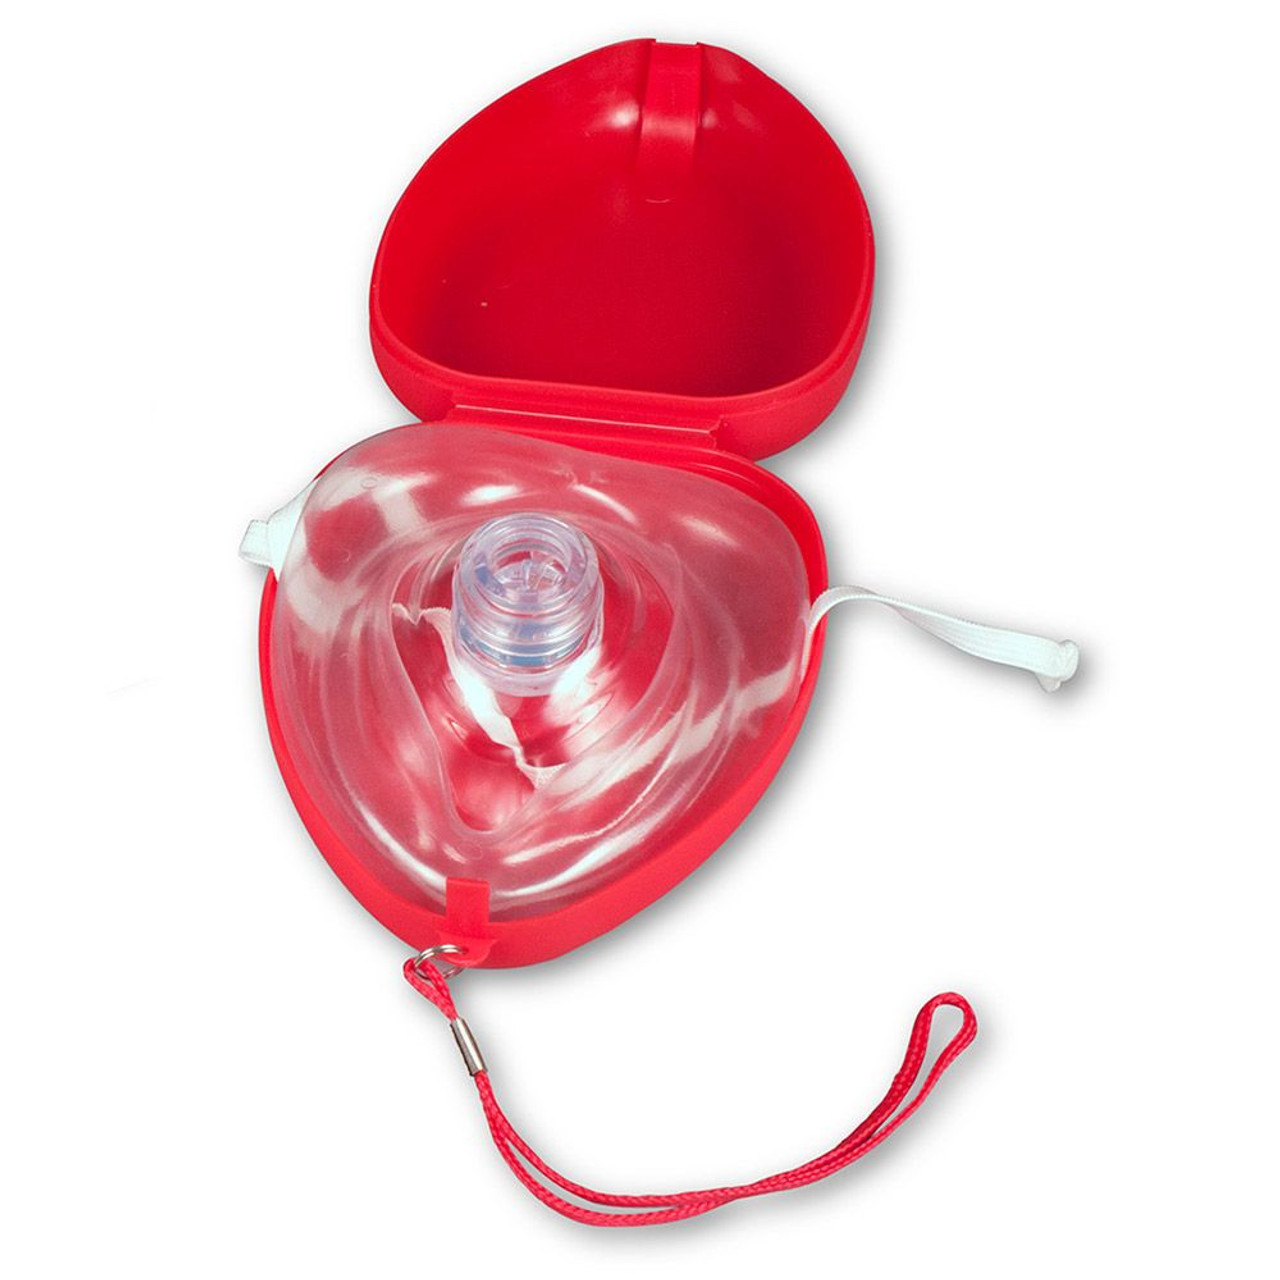 Карманная маска для искусственного дыхания. Карманная маска для ИВЛ "рот-маска" Laerdal. Маска реанимационная для СЛР. Маска CPR. Карманная маска для реанимации с клапаном.